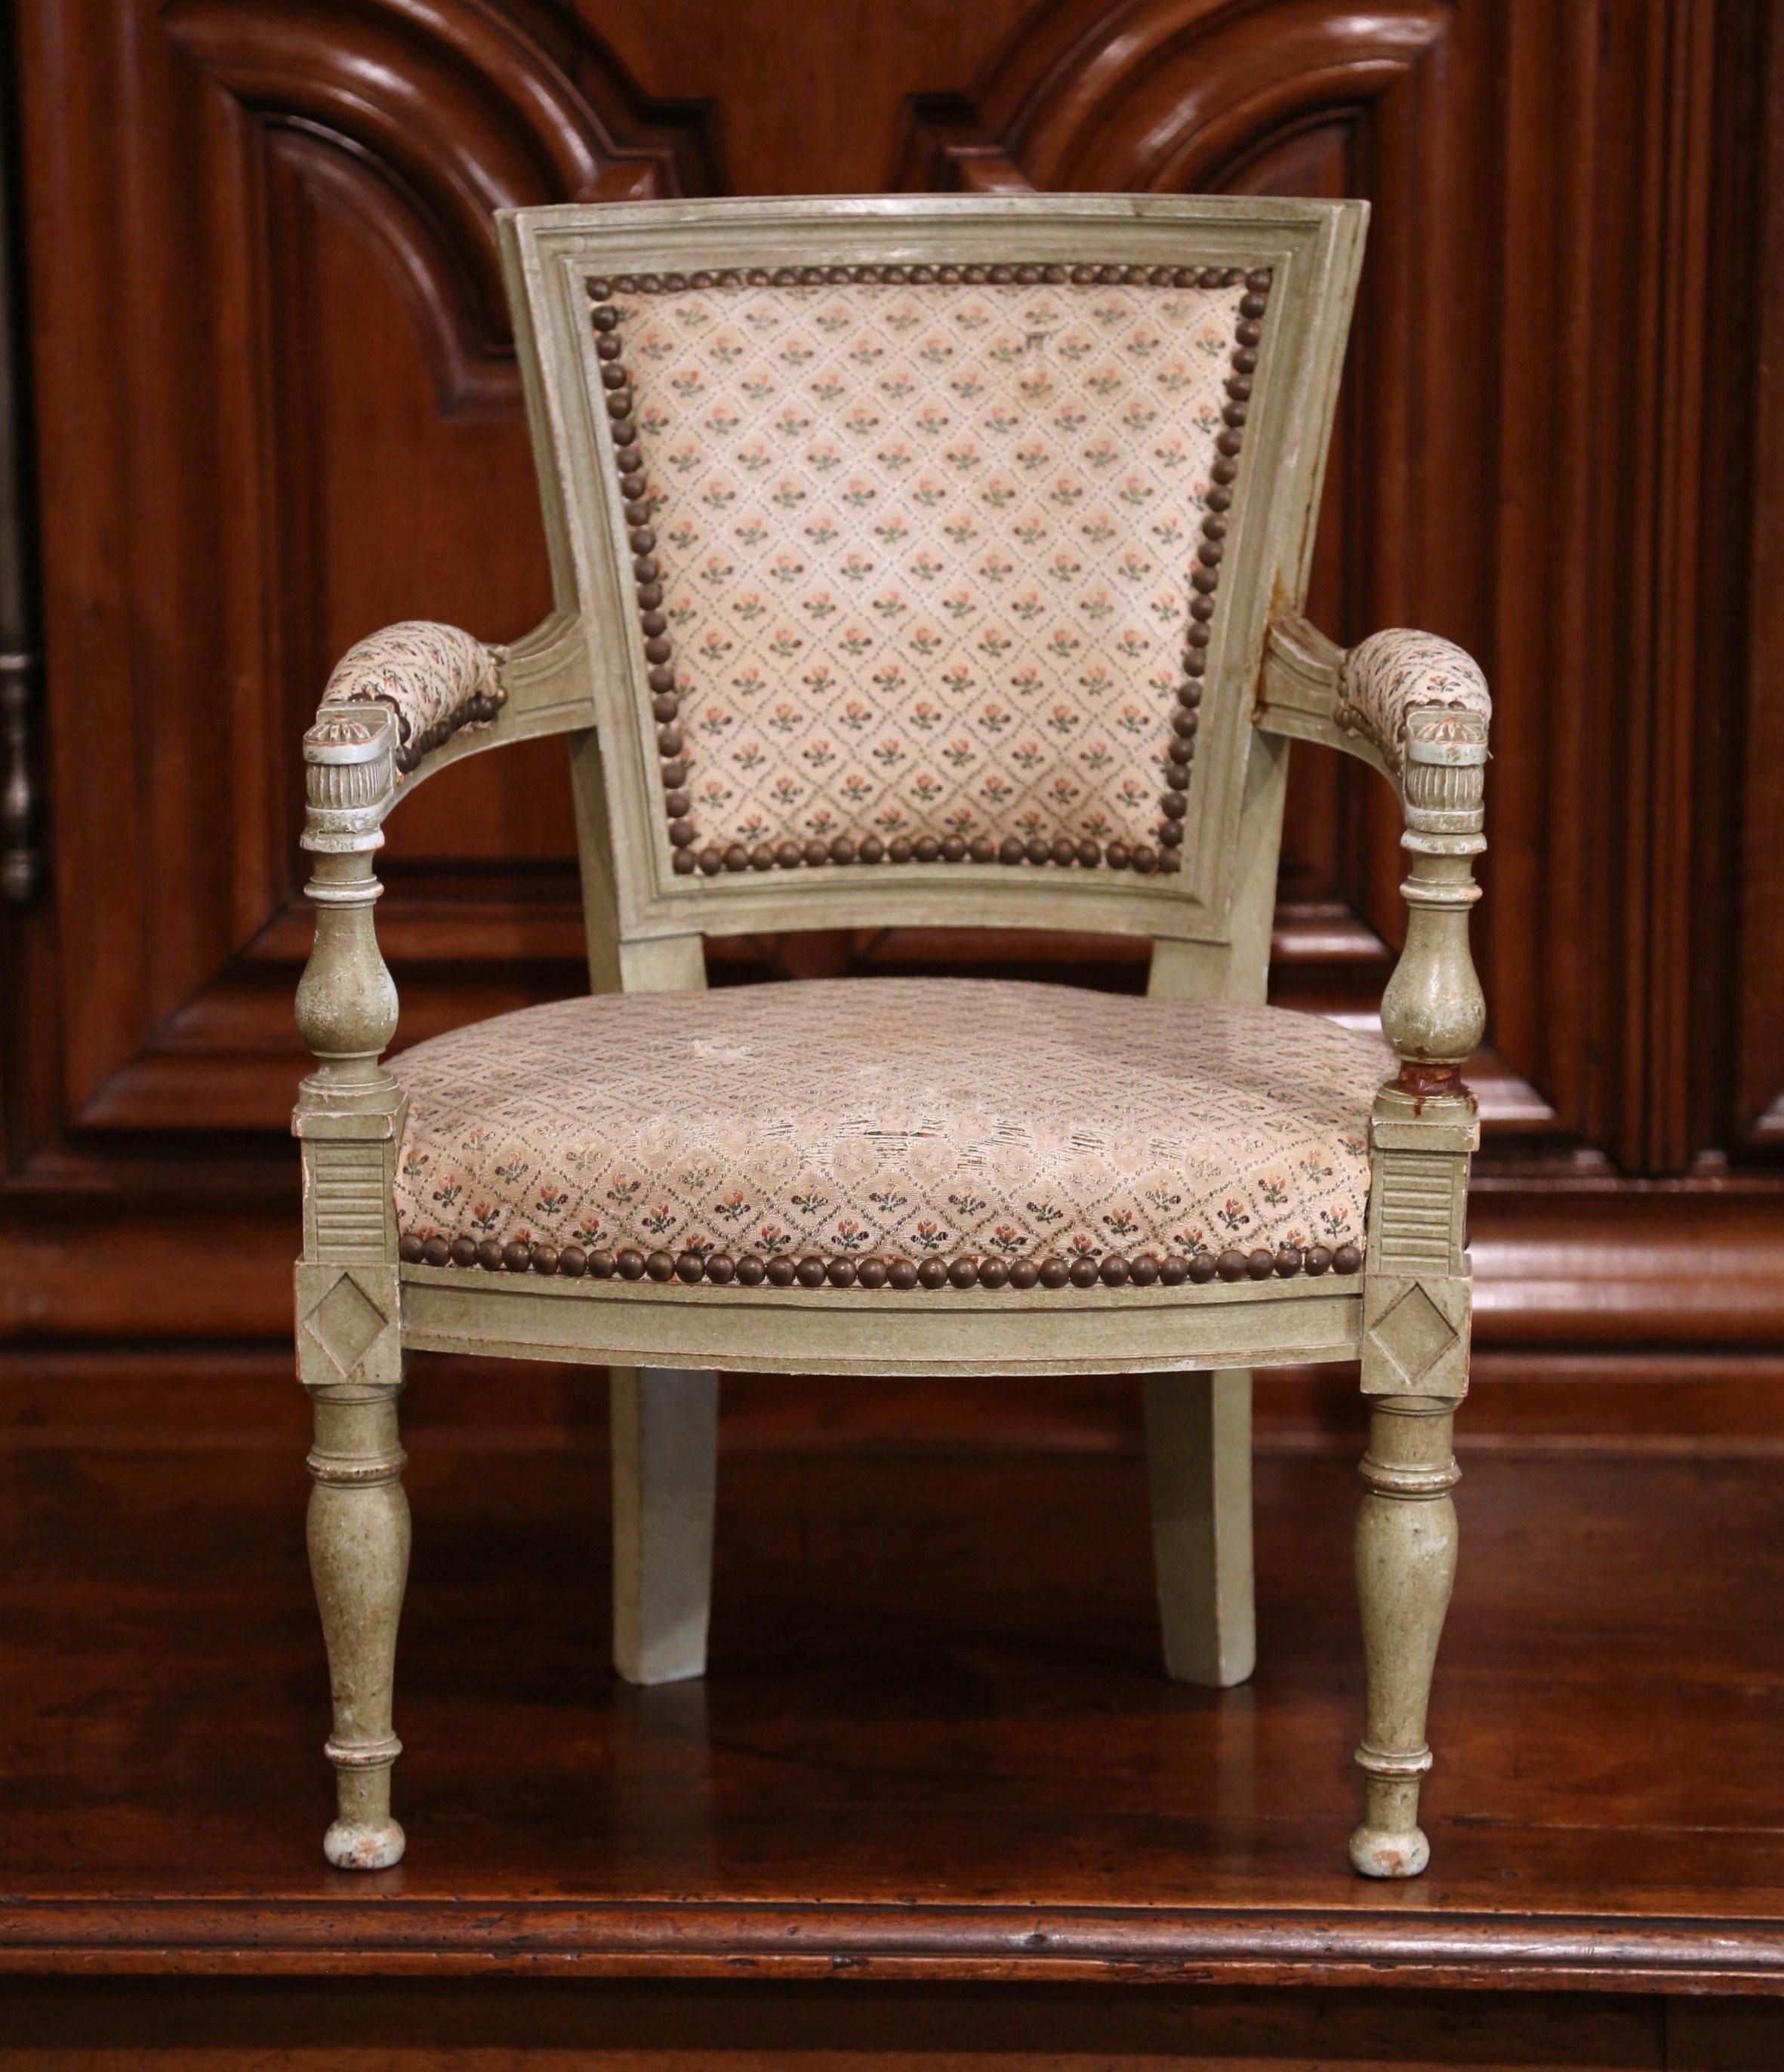 Ajoutez du charme à un salon familial ou à une chambre d'enfant avec cet élégant fauteuil pour enfants. Fabriquée en France vers 1860, cette chaise ancienne peinte présente un dossier carré, deux accoudoirs sculptés avec des médaillons floraux, et